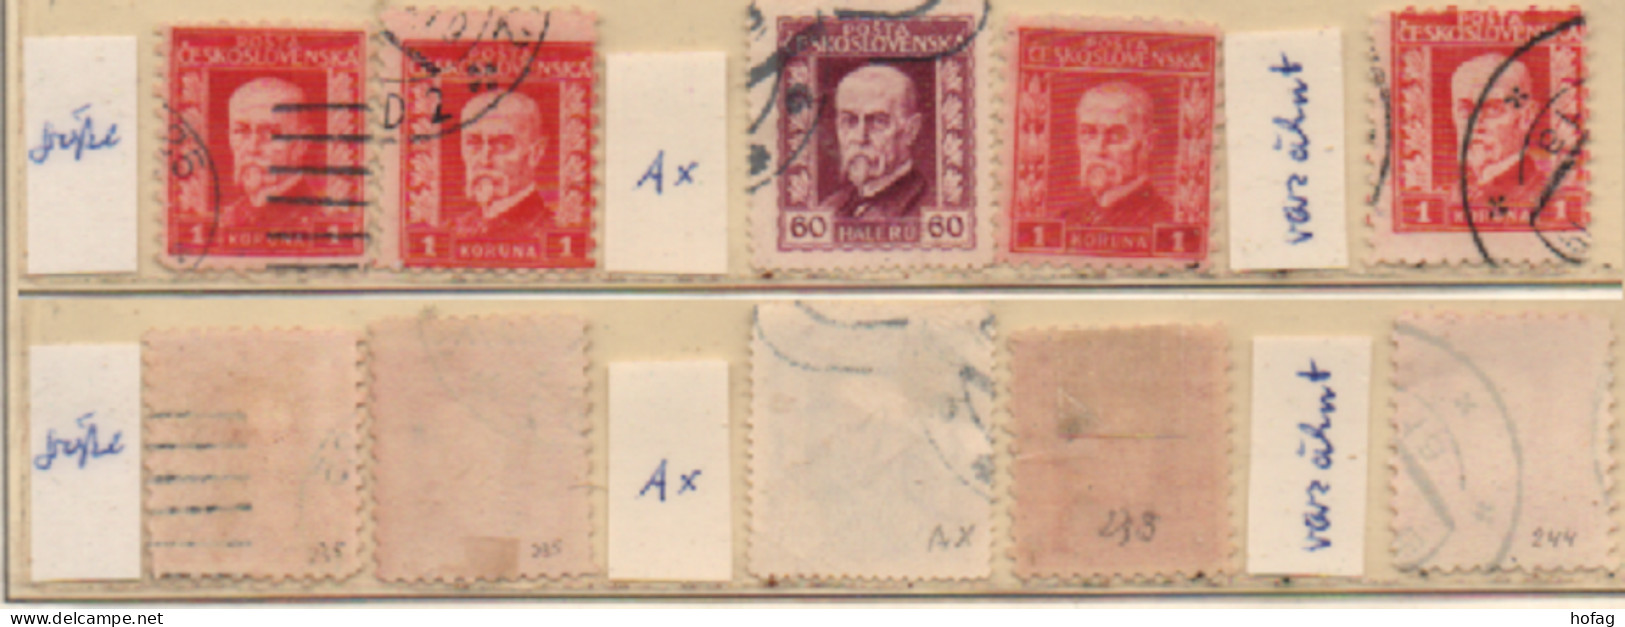 Tschechoslowakei 1925 Masaryk 5 Marken Siehe Bild Gestempelt Czechoslovakia Used - Used Stamps